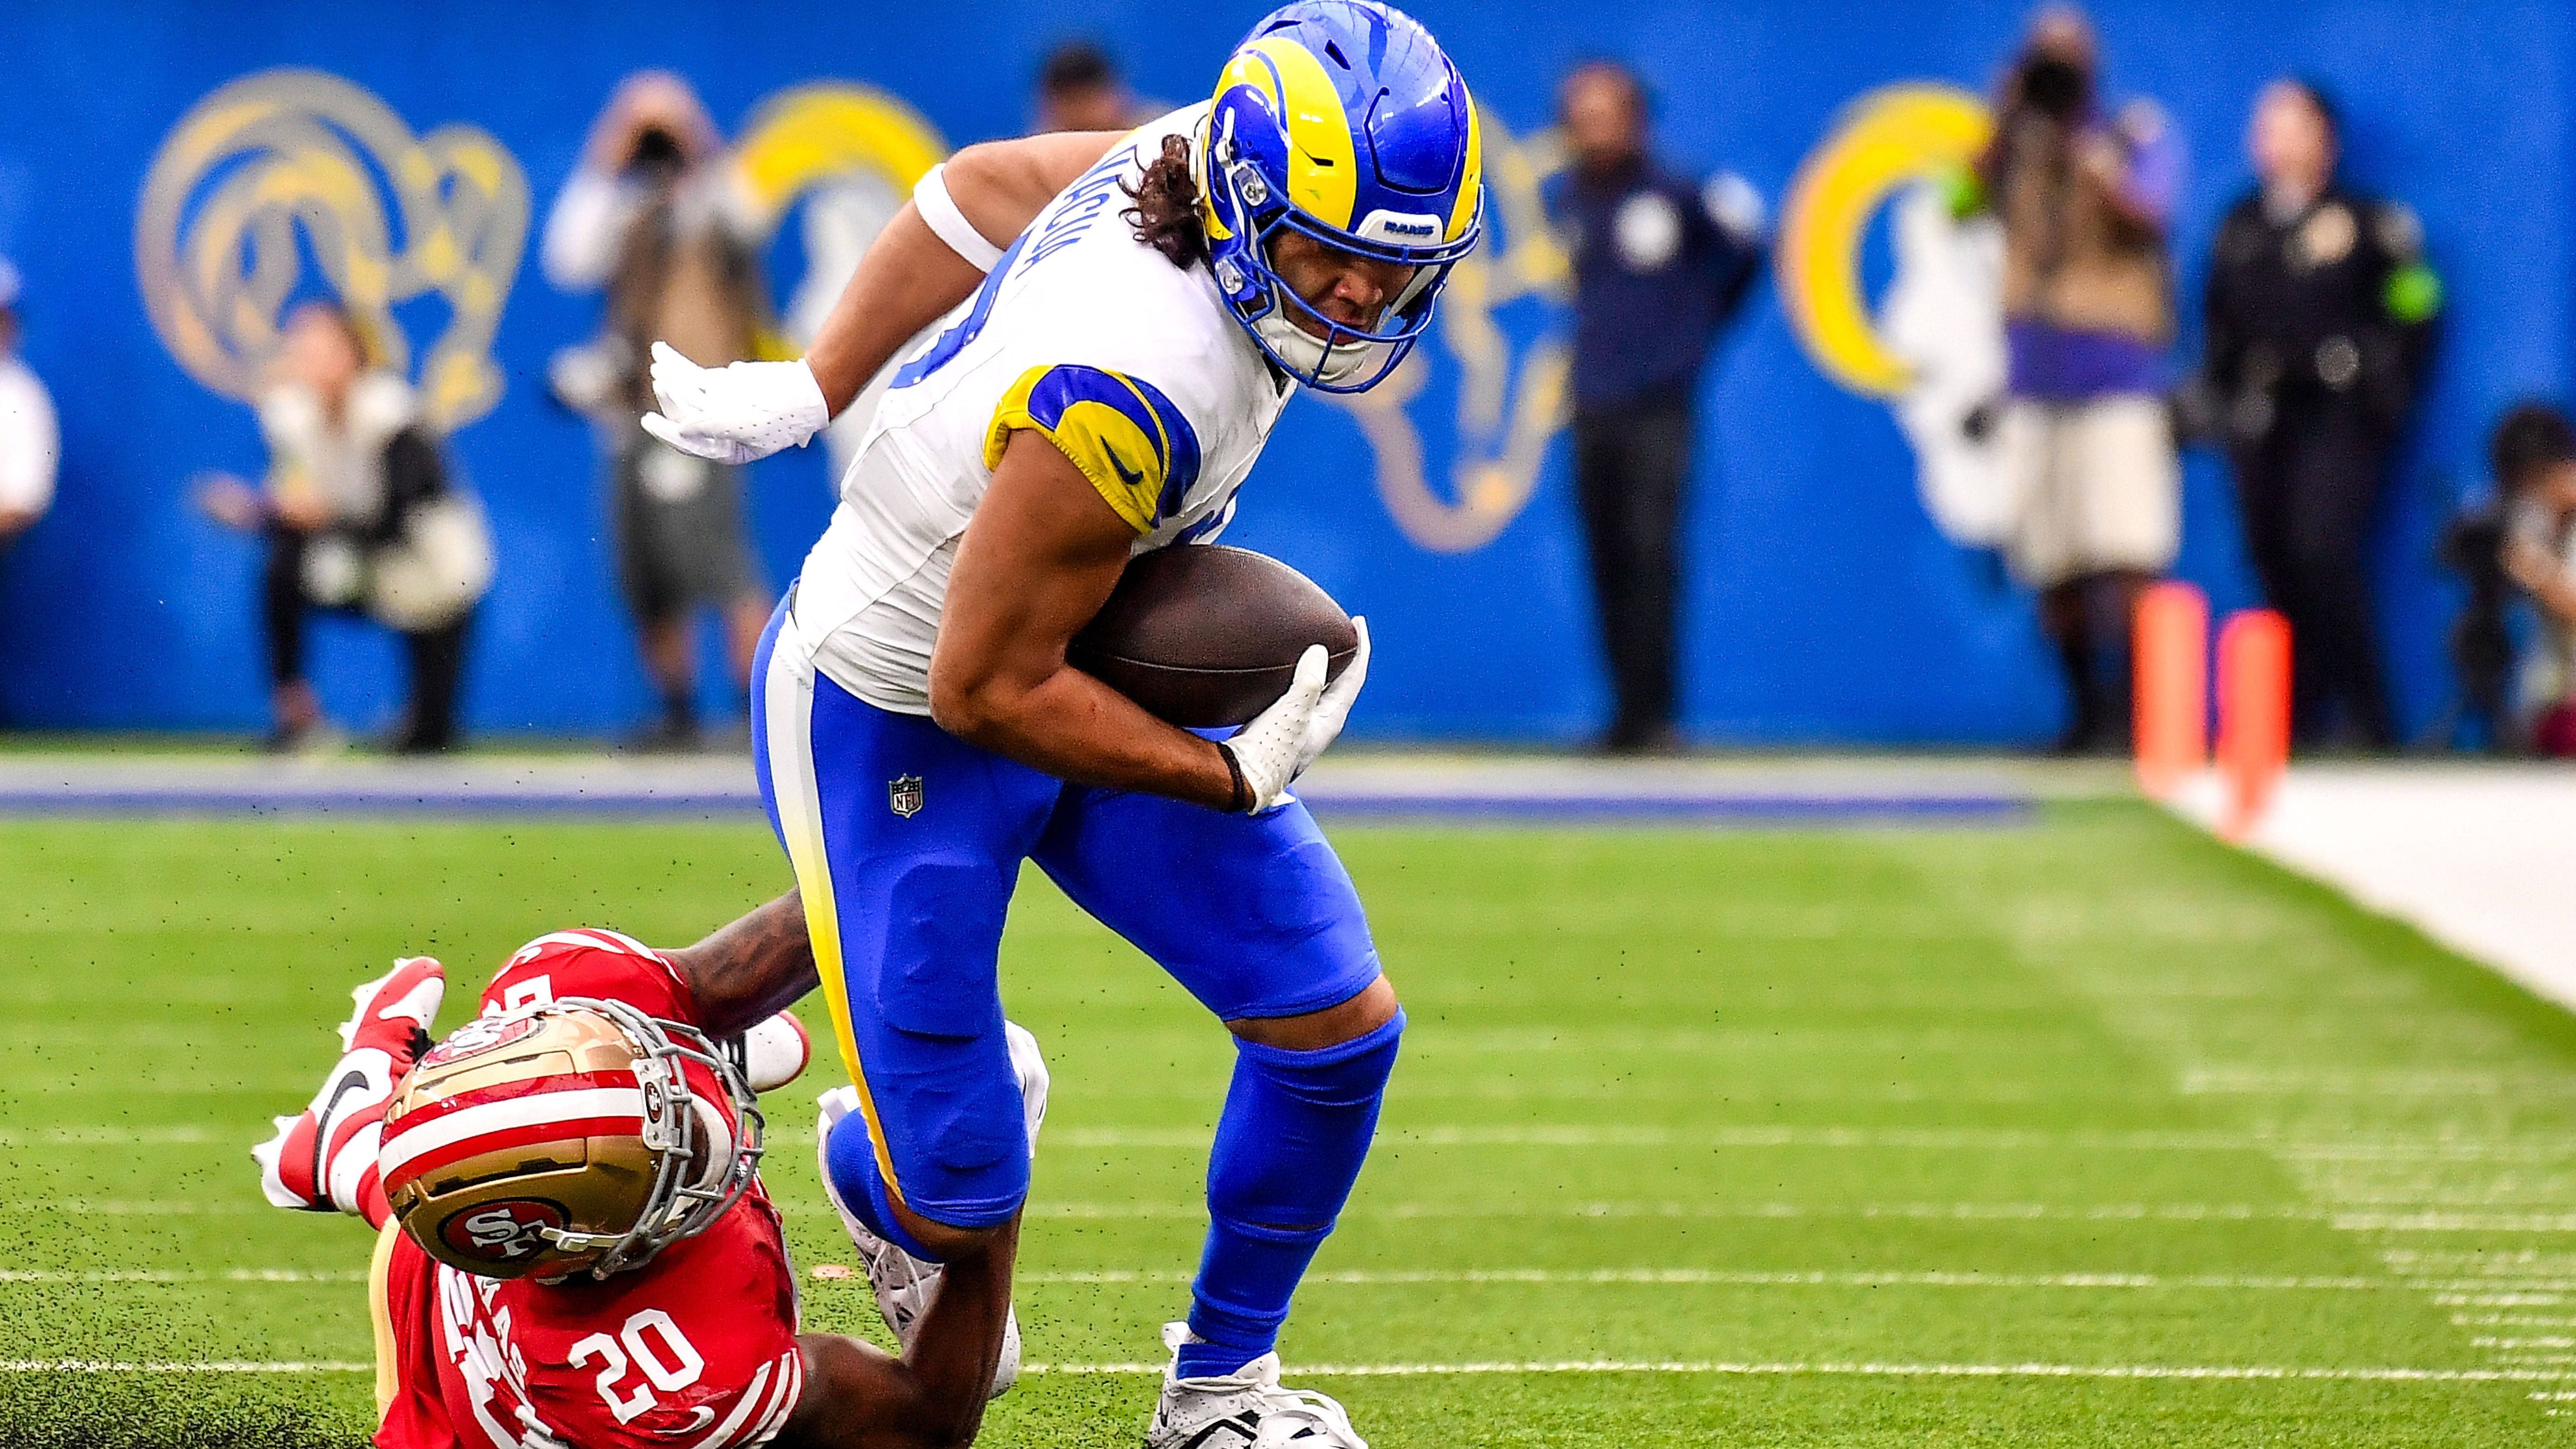 <strong>Week 2: Puka Nacua (Los Angeles Rams)</strong><br>Mit Puka Nacua ist den Los Angeles Rams ein absoluter Draft-Steal gelungen. Der Fünftrundenpick knackte gegen die San Francisco 49ers mit 15 Catches den bestehenden Rekord für Pass-Fänge in einem Spiel durch einen Rookie (14)...